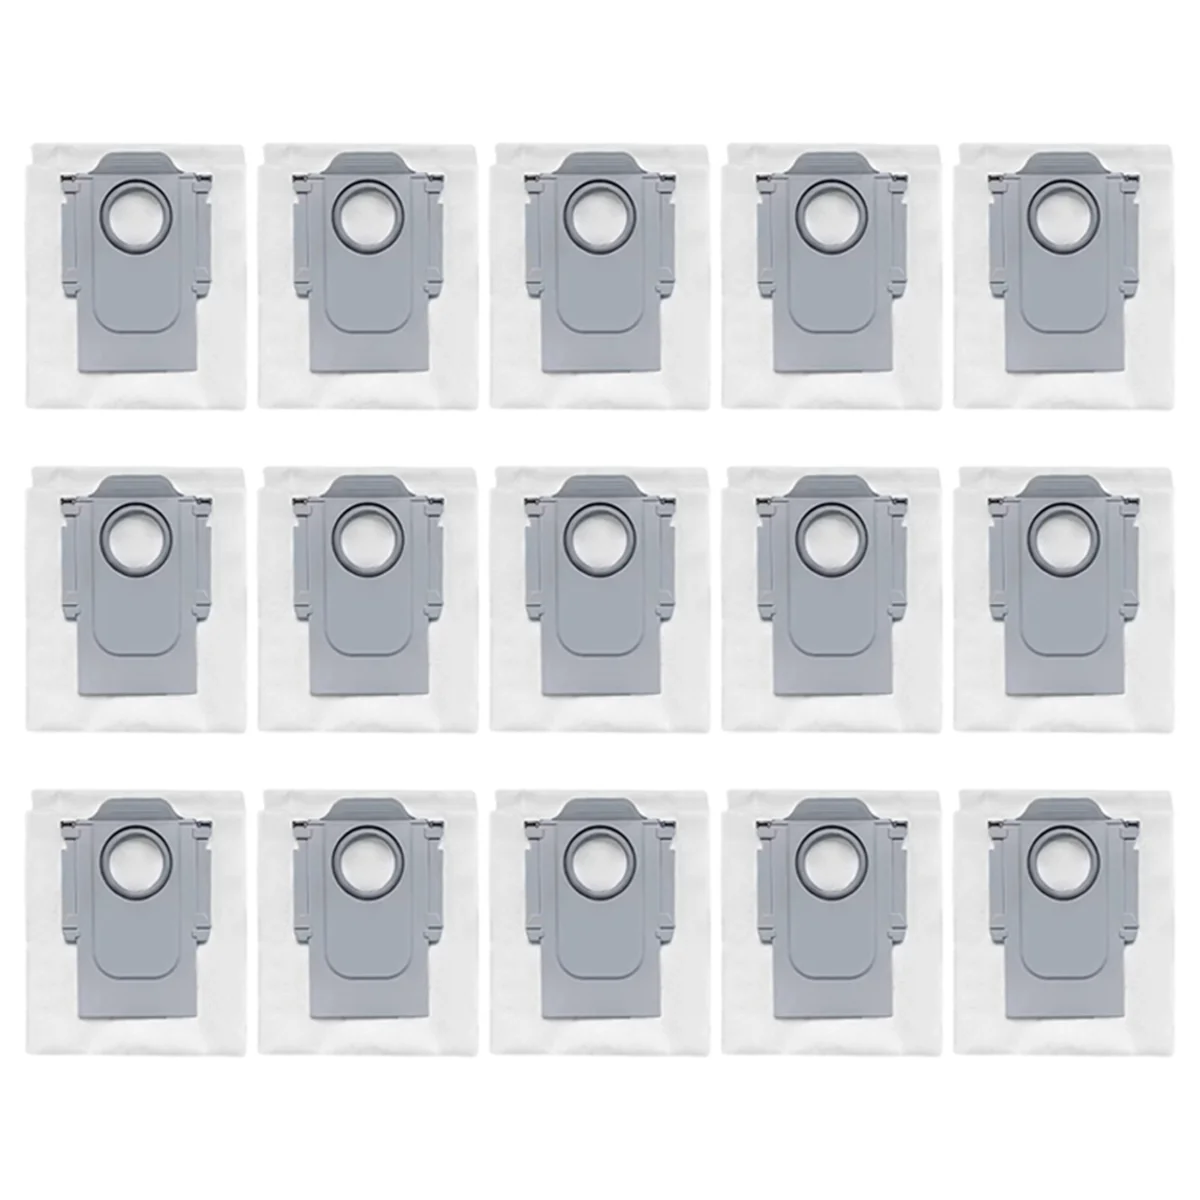 

Пылесборники для робота-пылесоса Roborock Q Revo, 15 шт./упаковка